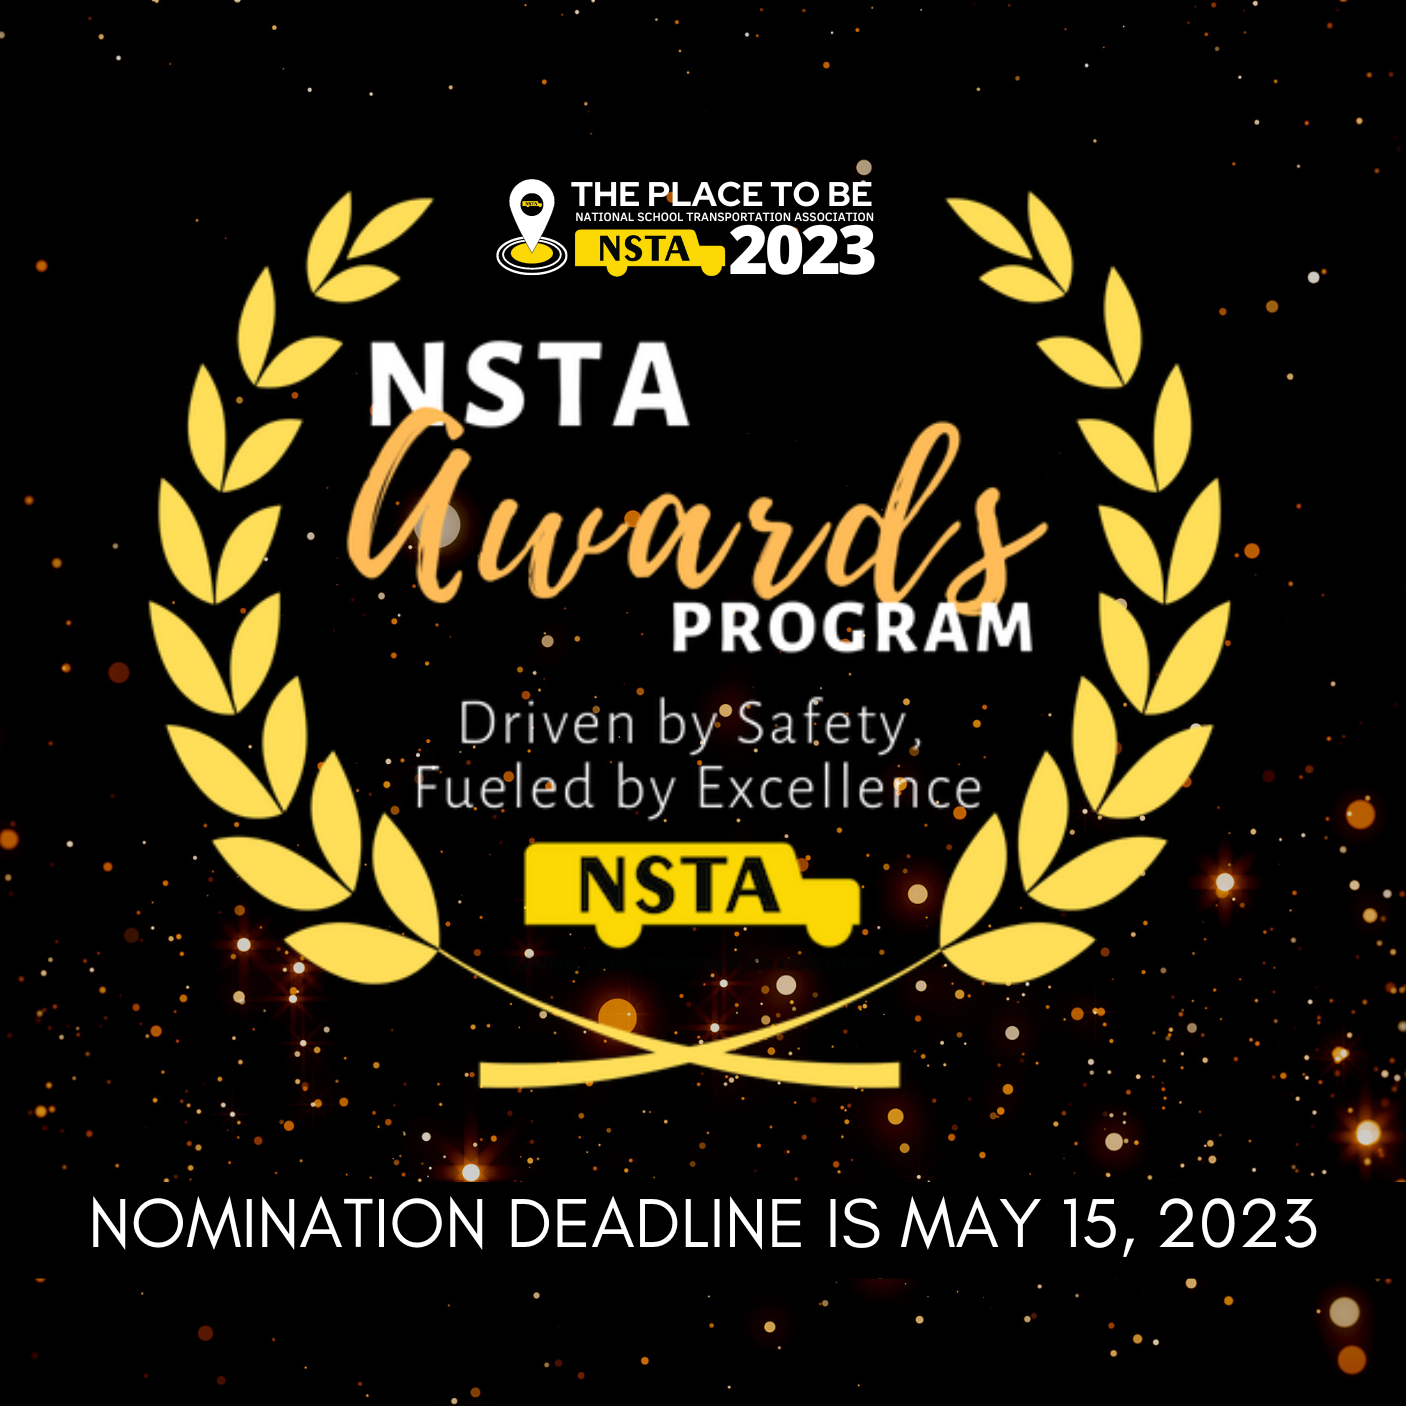 NSTA Awards Program